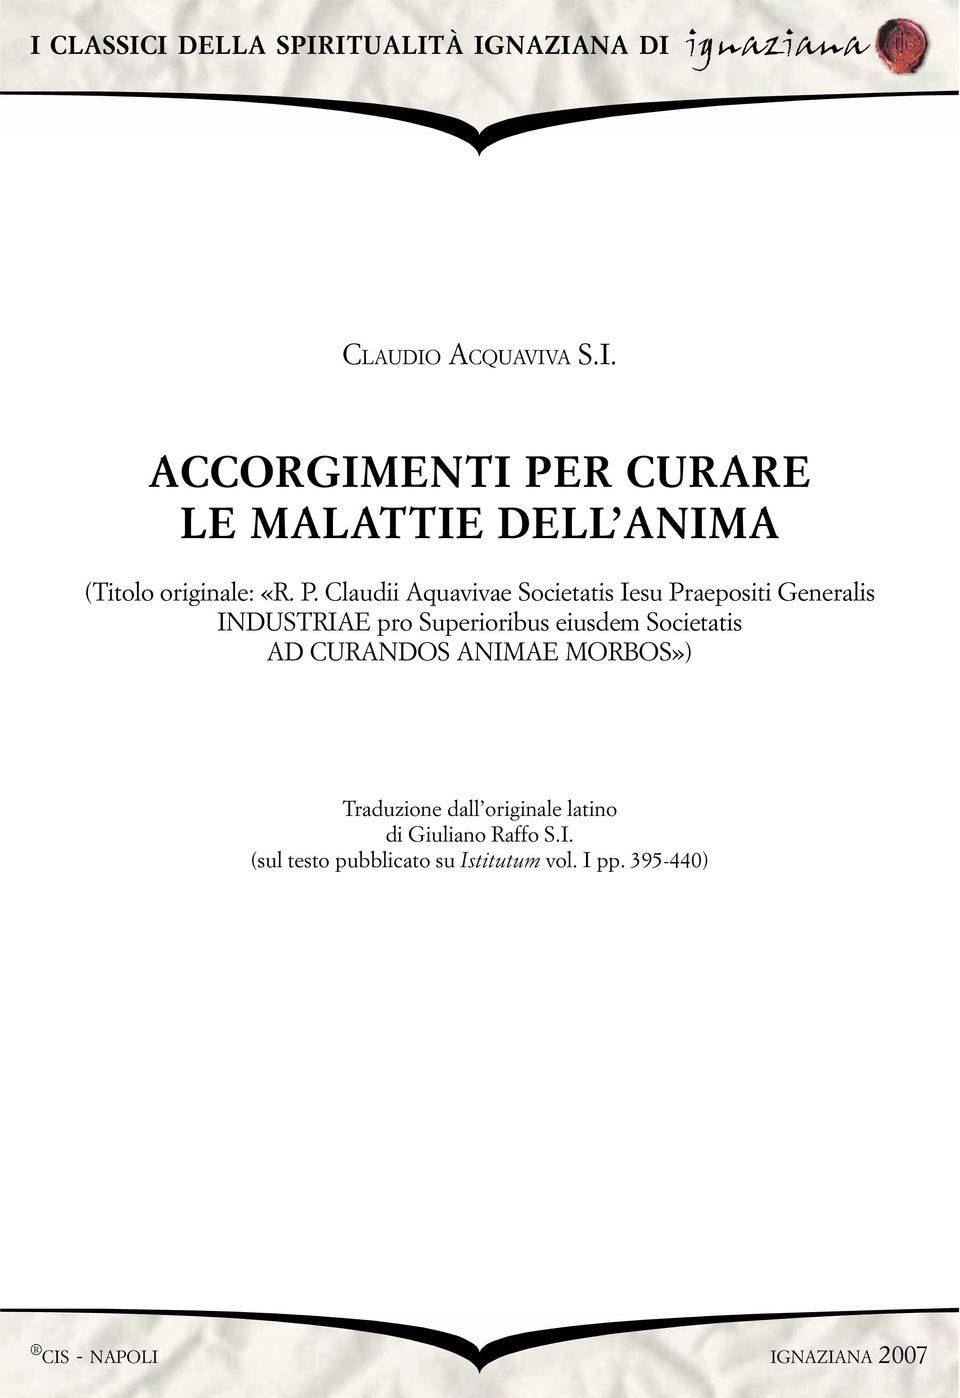 Societatis AD CURANDOS ANIMAE MORBOS») Traduzione dall originale latino di Giuliano Raffo S.I. (sul testo pubblicato su Istitutum vol.